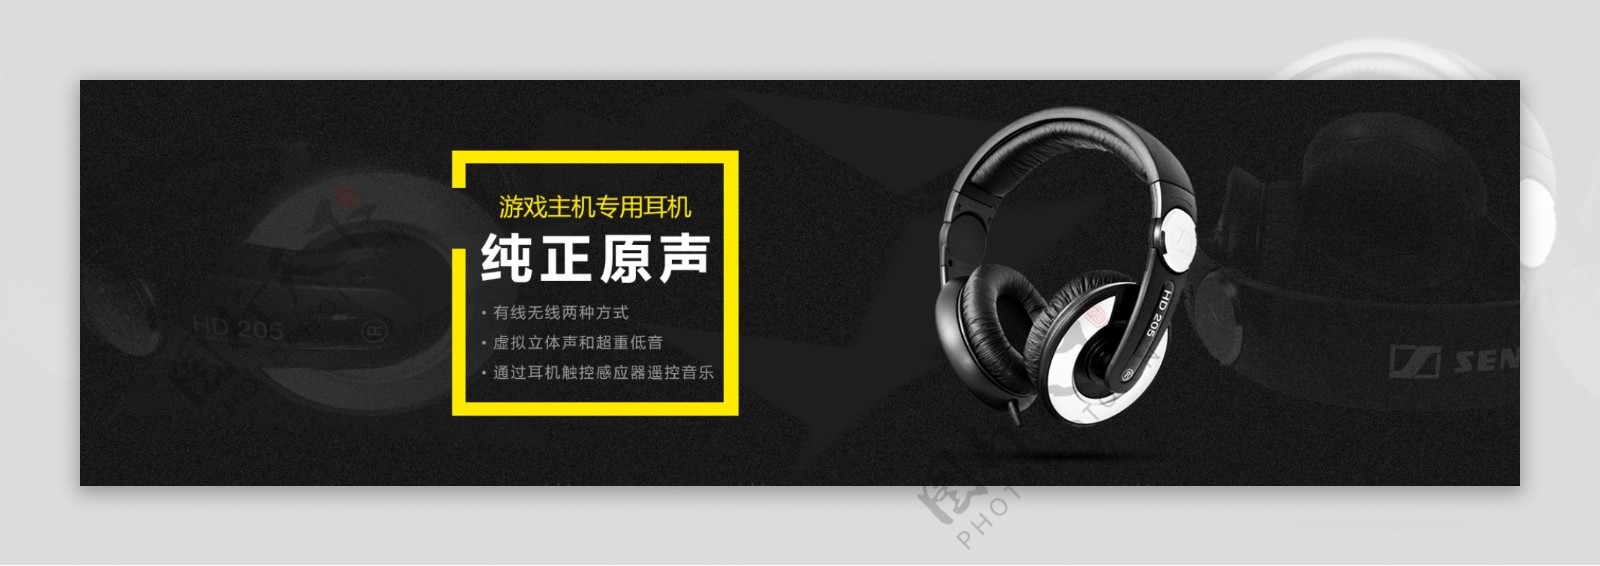 网页淘宝白色精美耳机海报banner设计